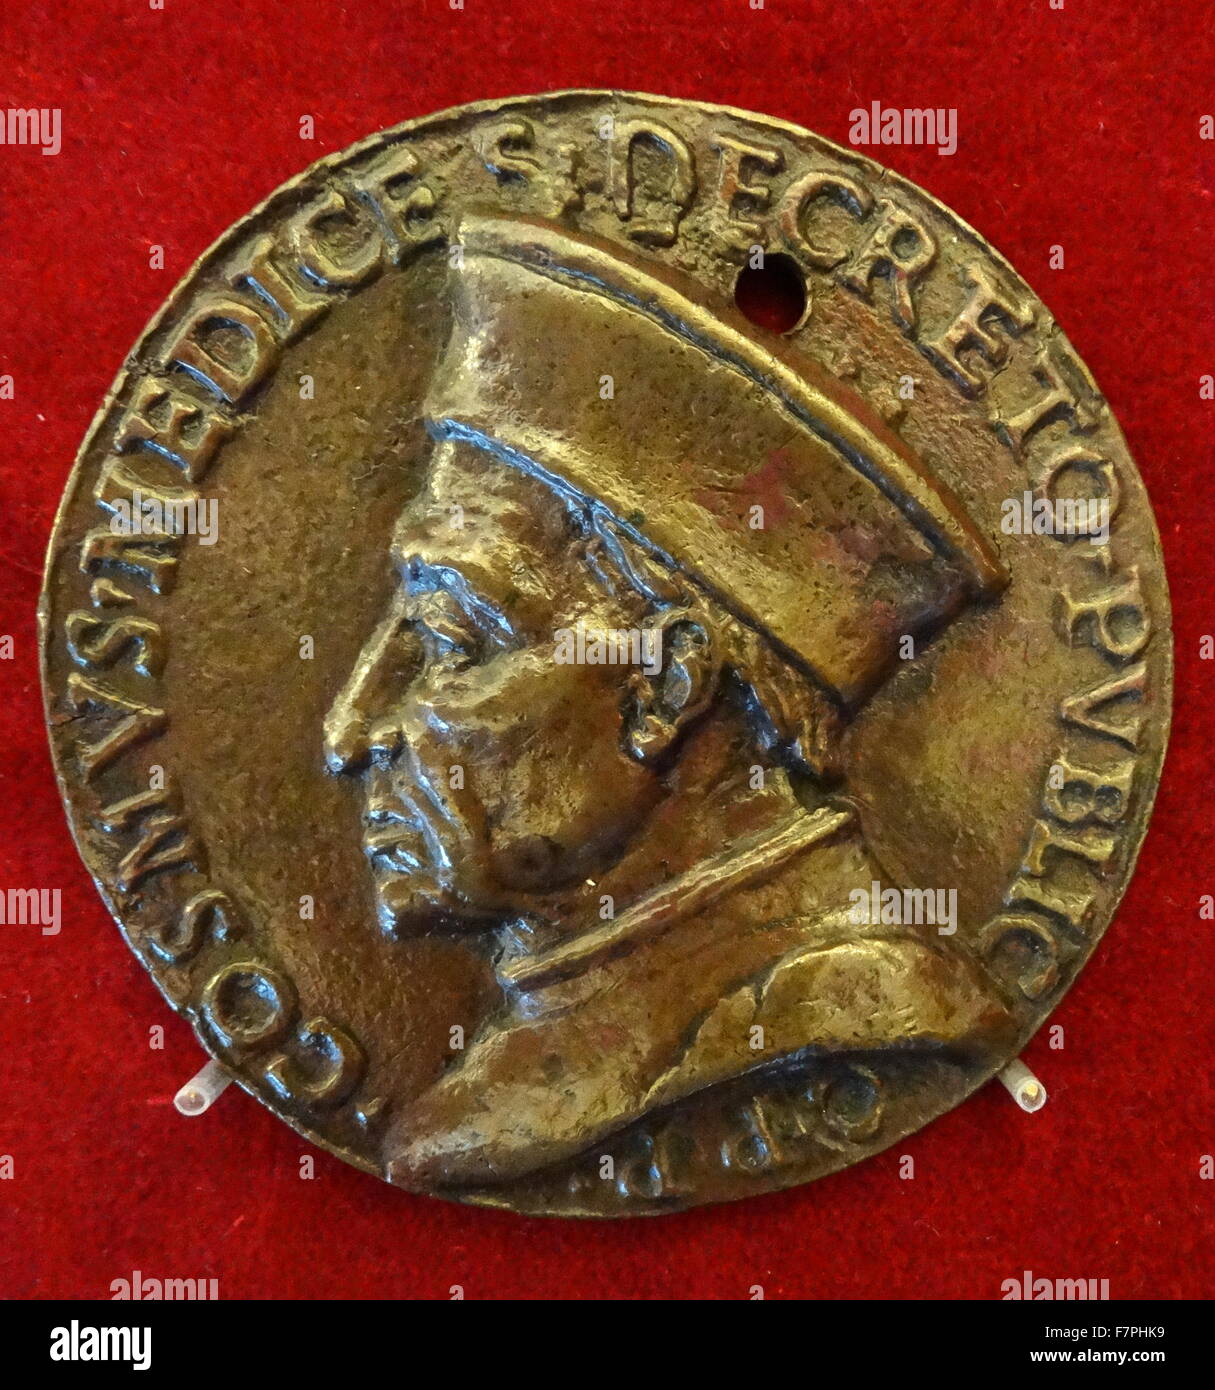 Münze von Lorenzo de' Medici (1449-1492) italienischer Staatsmann und de-facto-Herrscher von der florentinischen Republik während der italienischen Renaissance. Vom 15. Jahrhundert Stockfoto